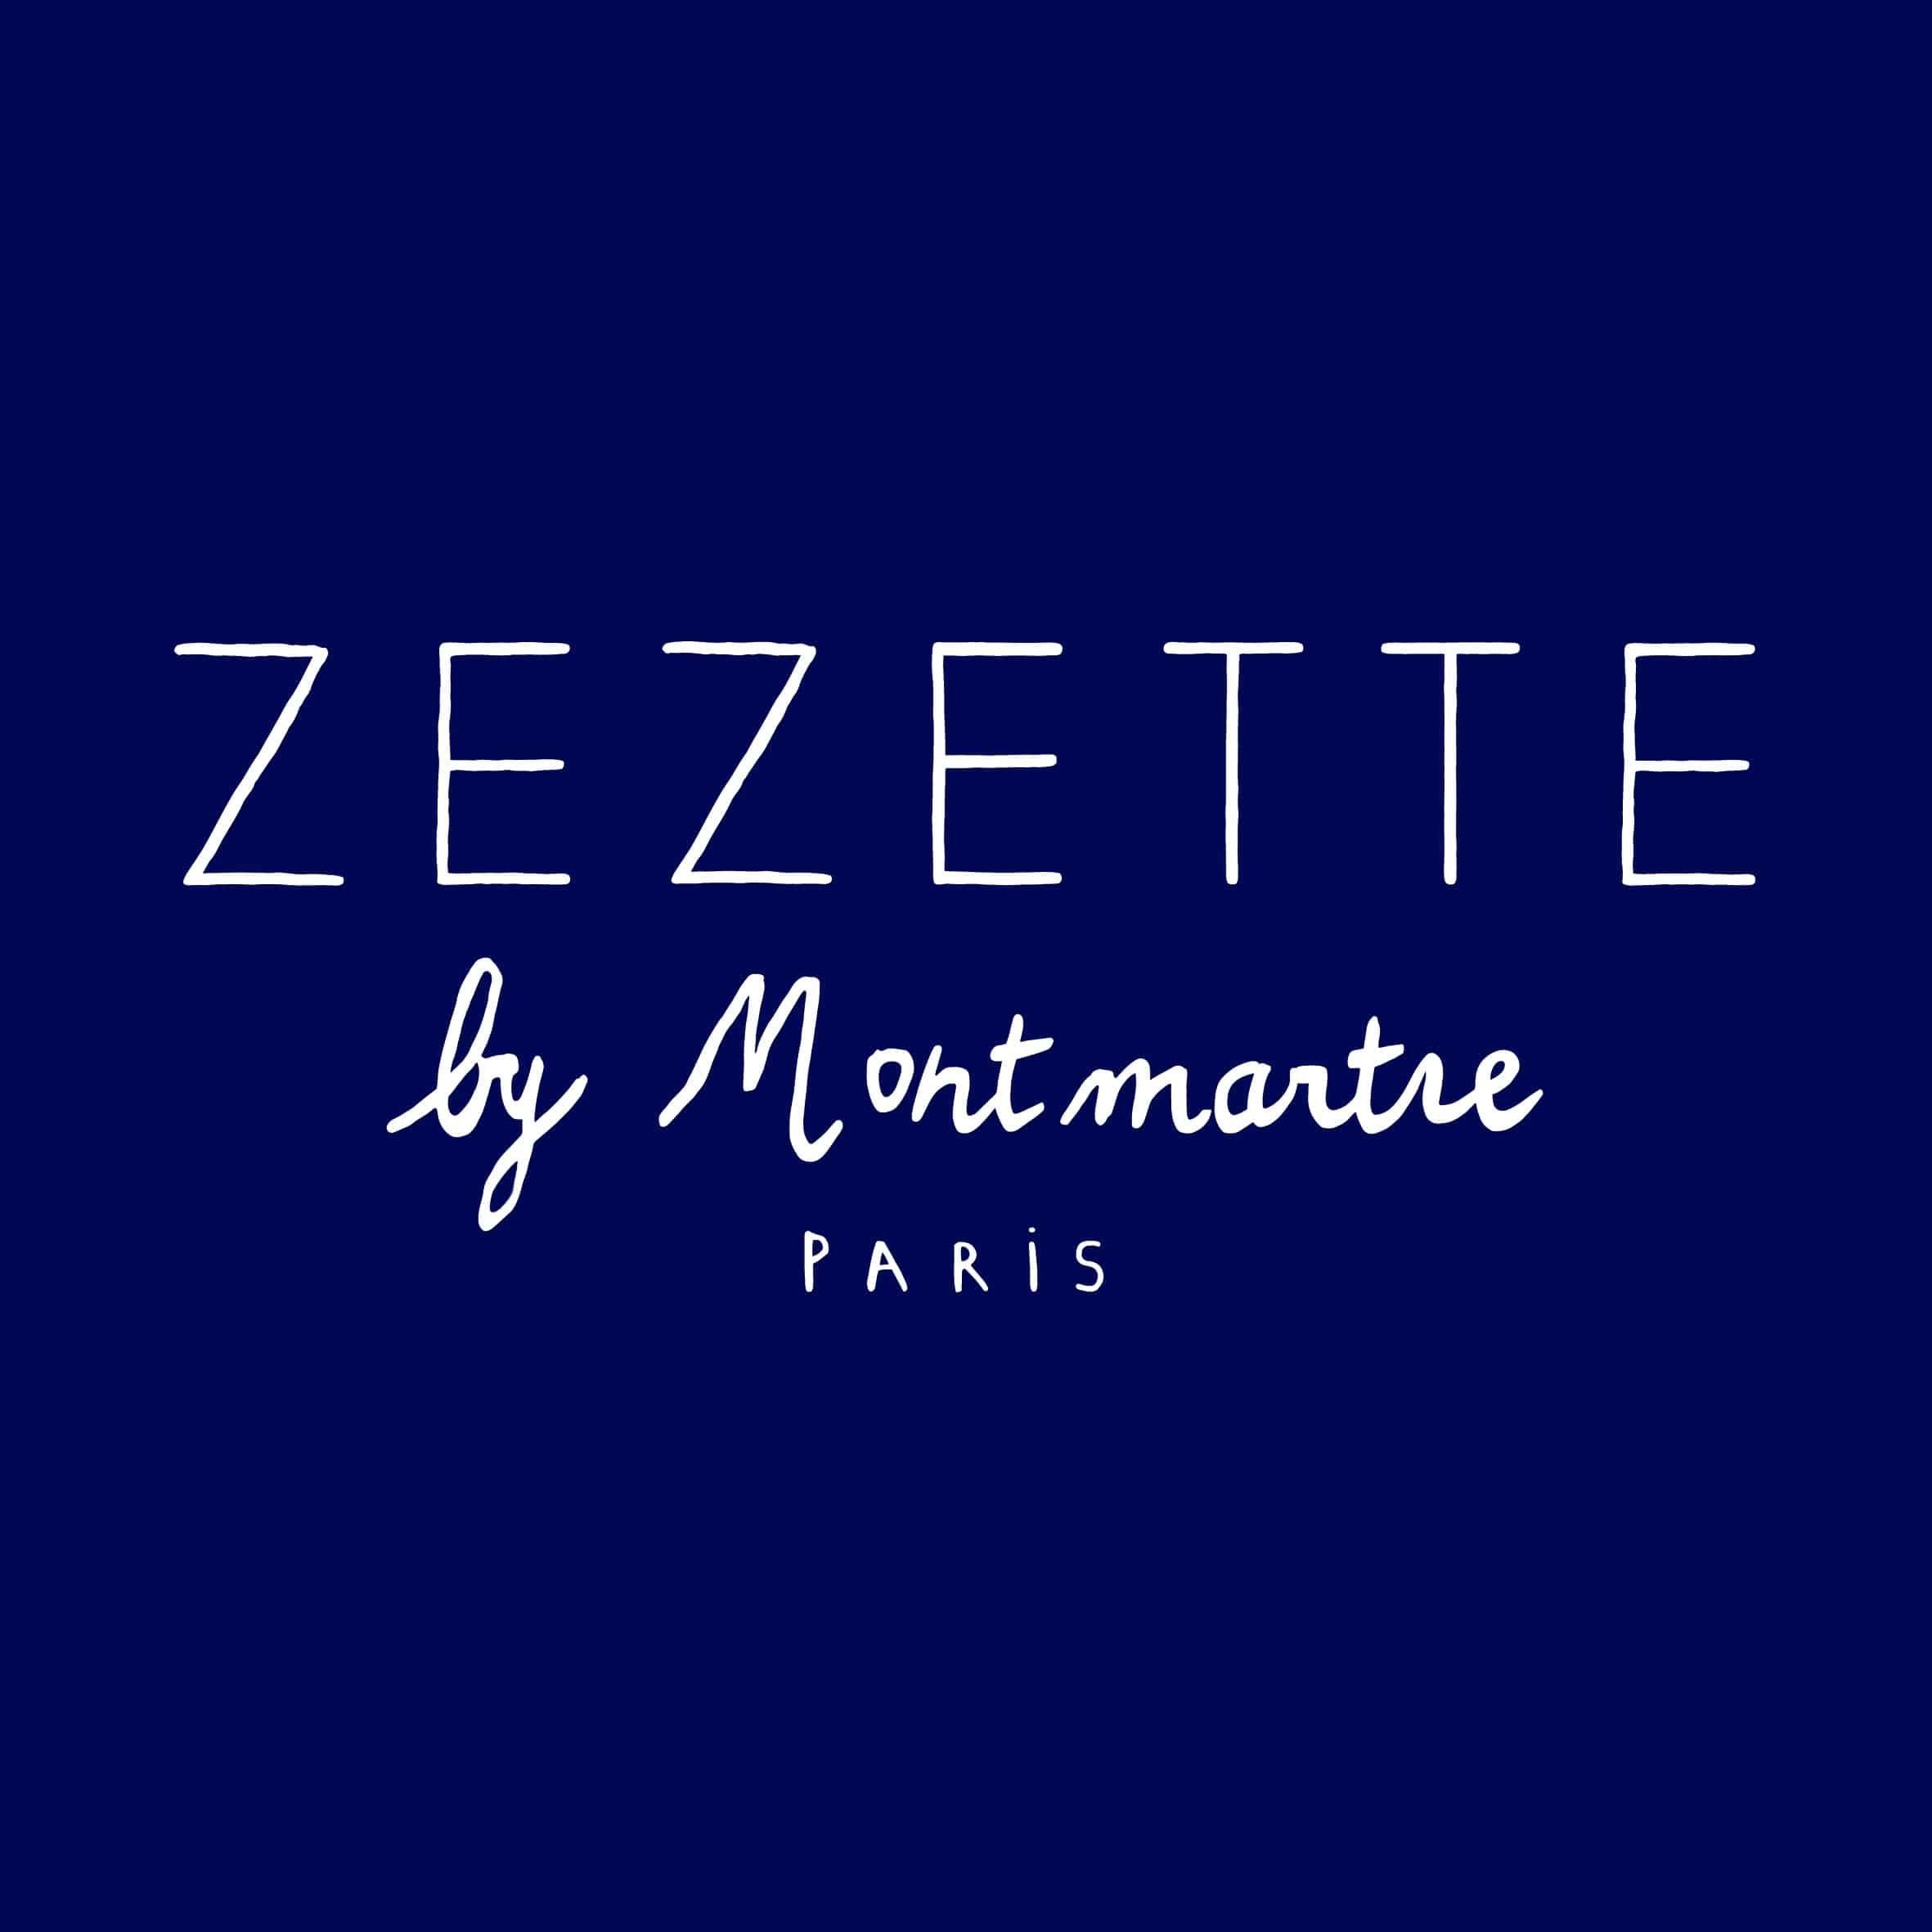 La marque ZEZETTE de tabliers originaux Montmartre